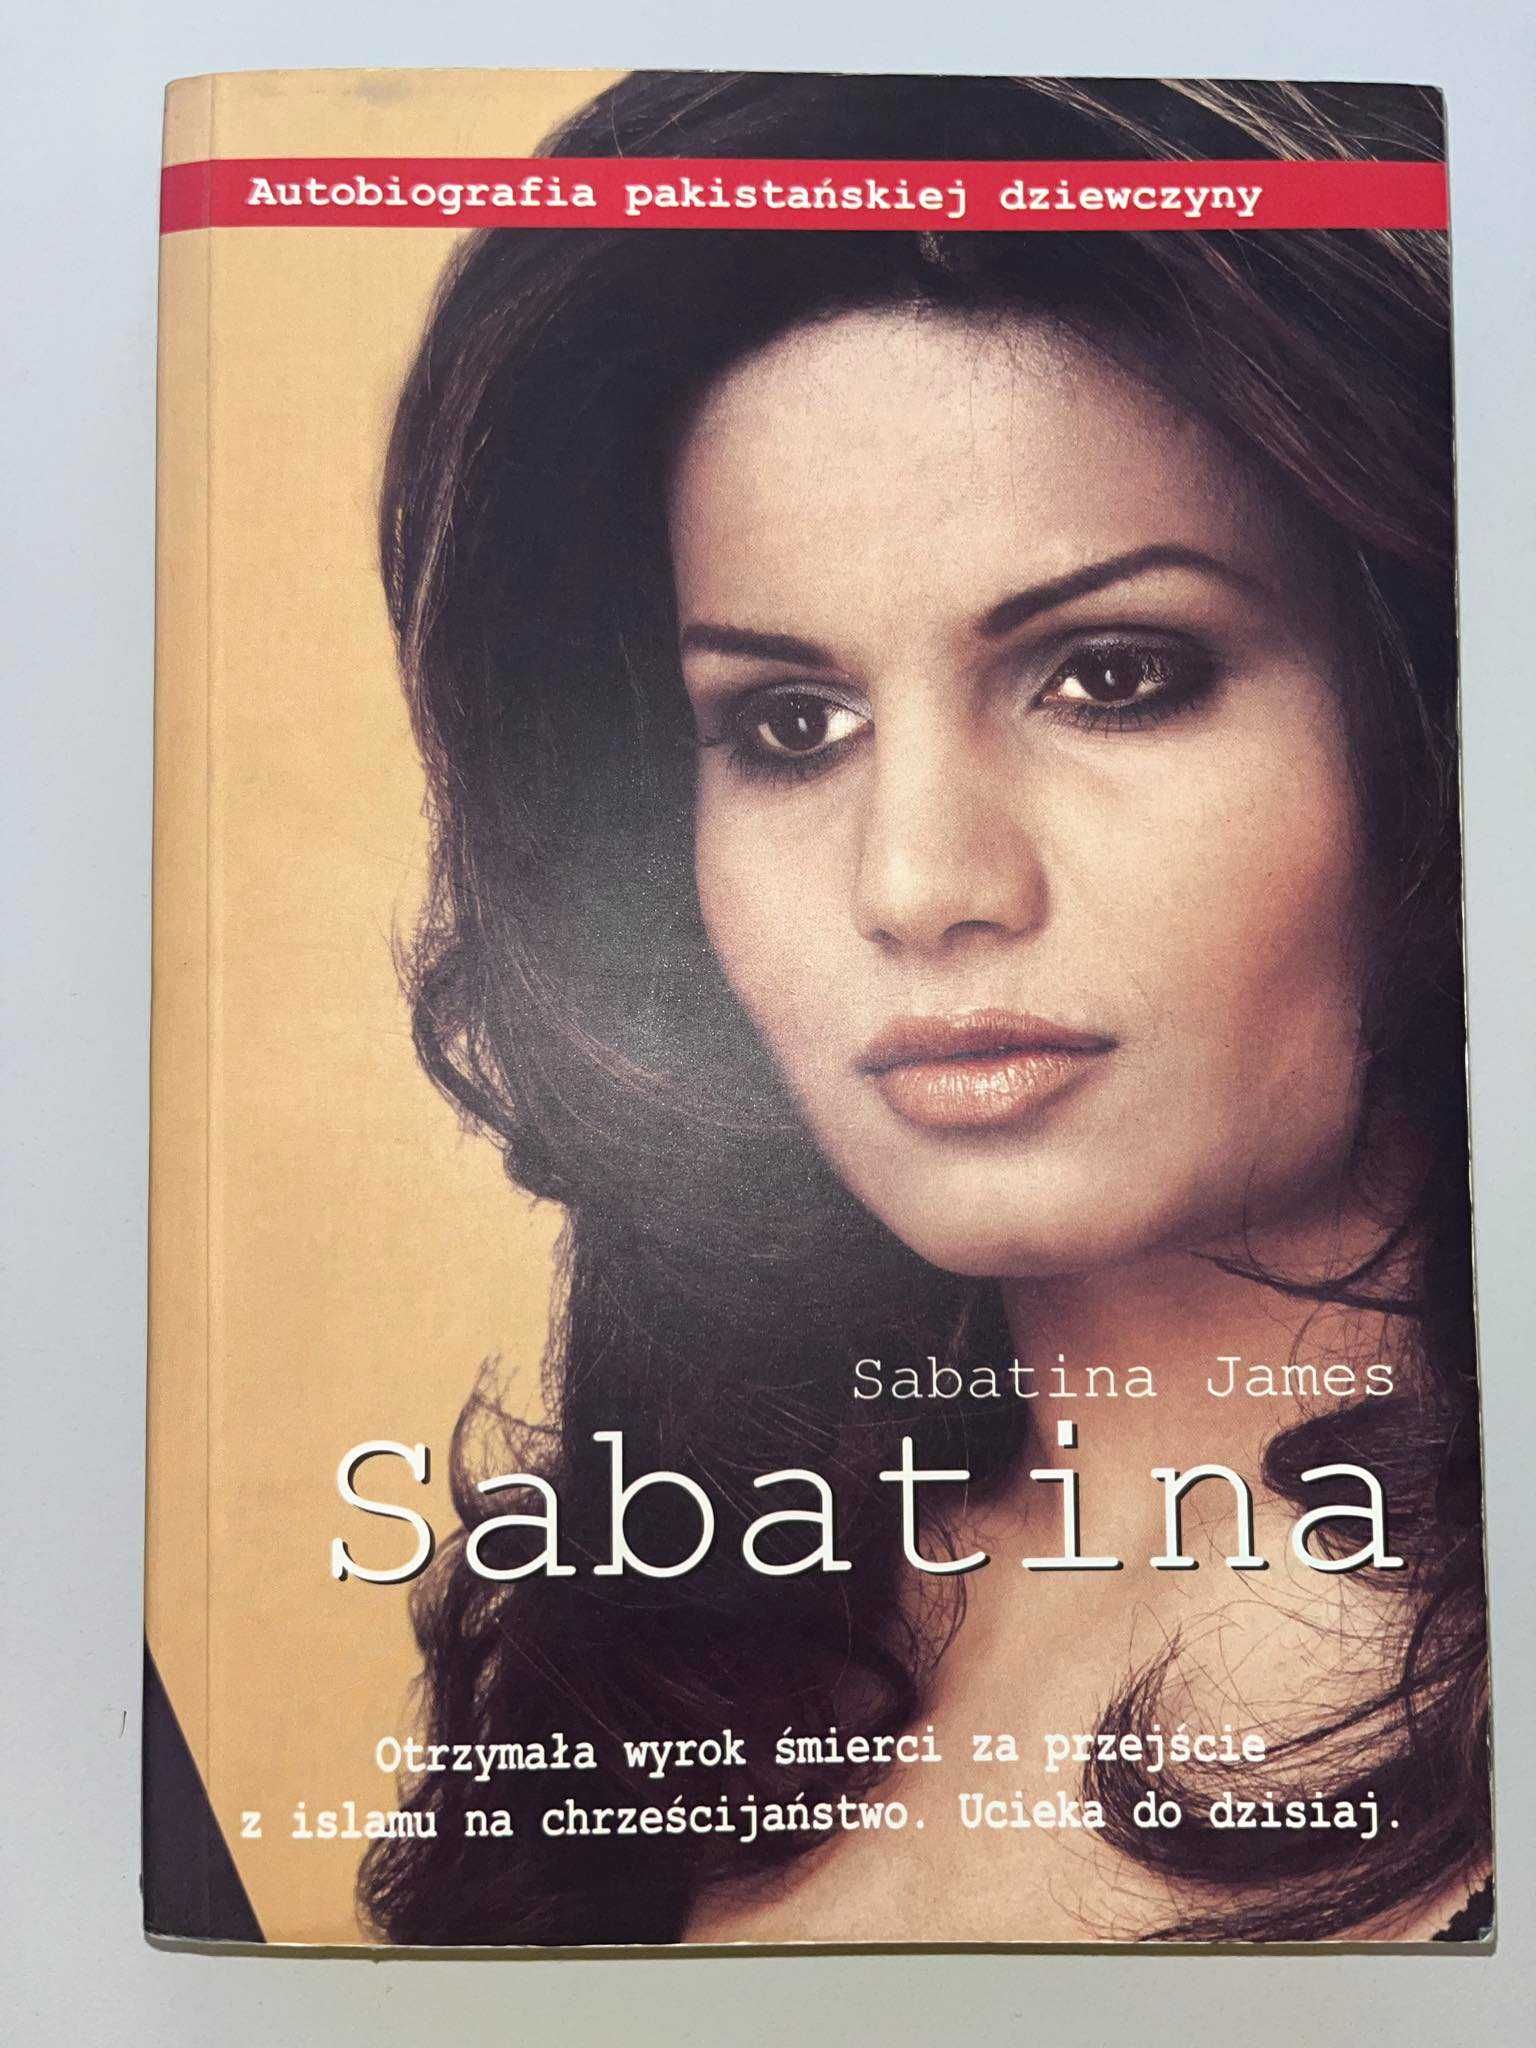 Książka Sabatina. Autobiografia pakistańskiej dziewczyny